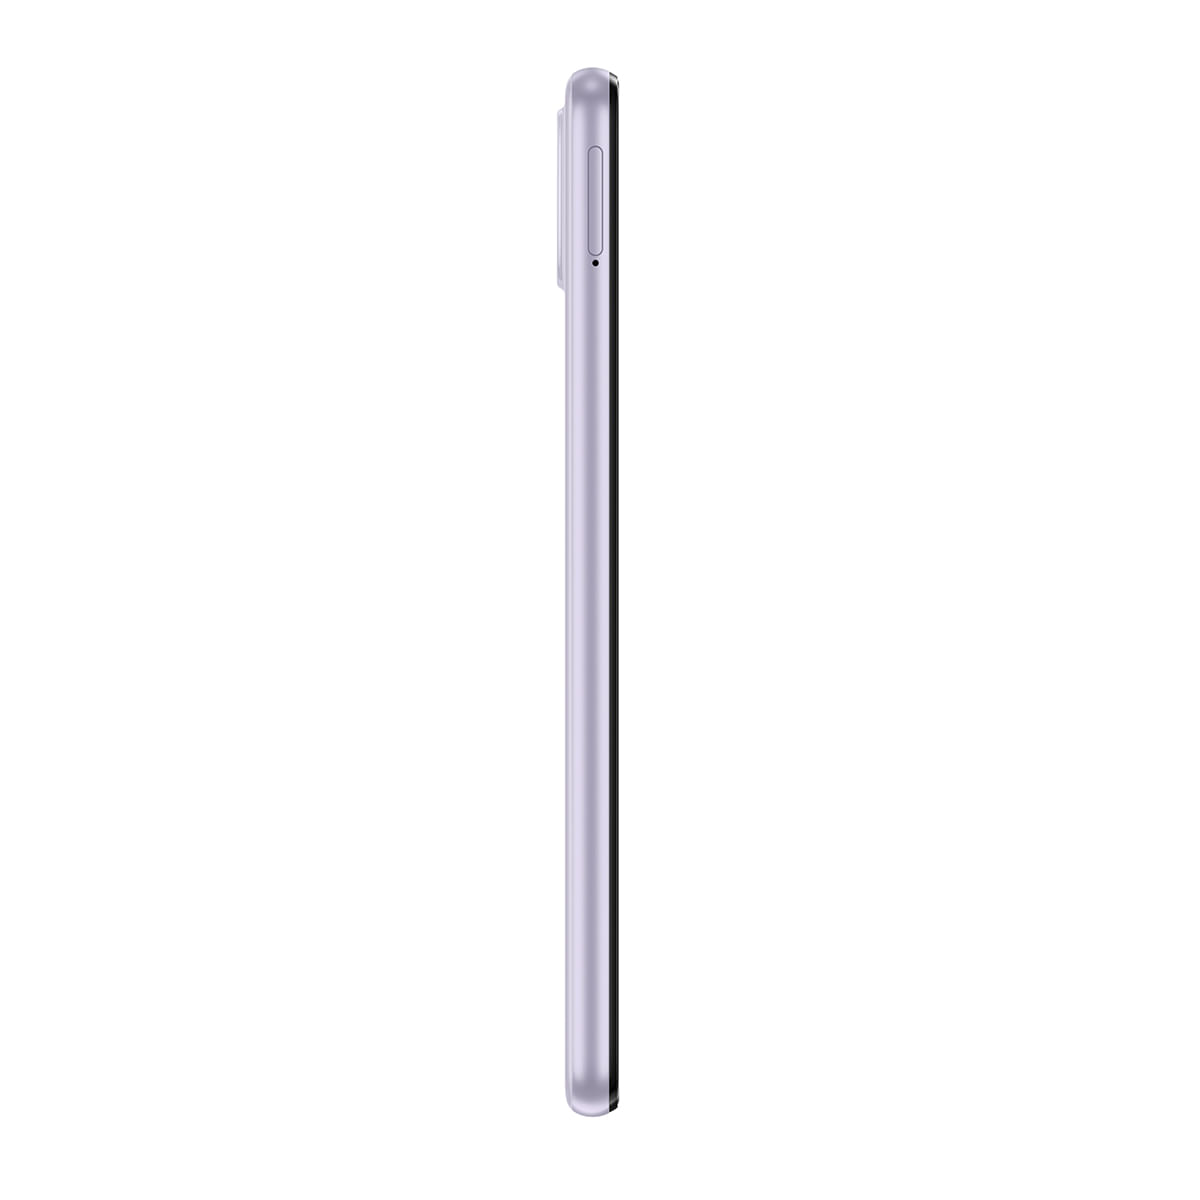 Smartphone Samsung Galaxy A22 128GB Violeta 4G Tela 6.4" Câmera Quadrupla Selfie 13MP Perfil Direito